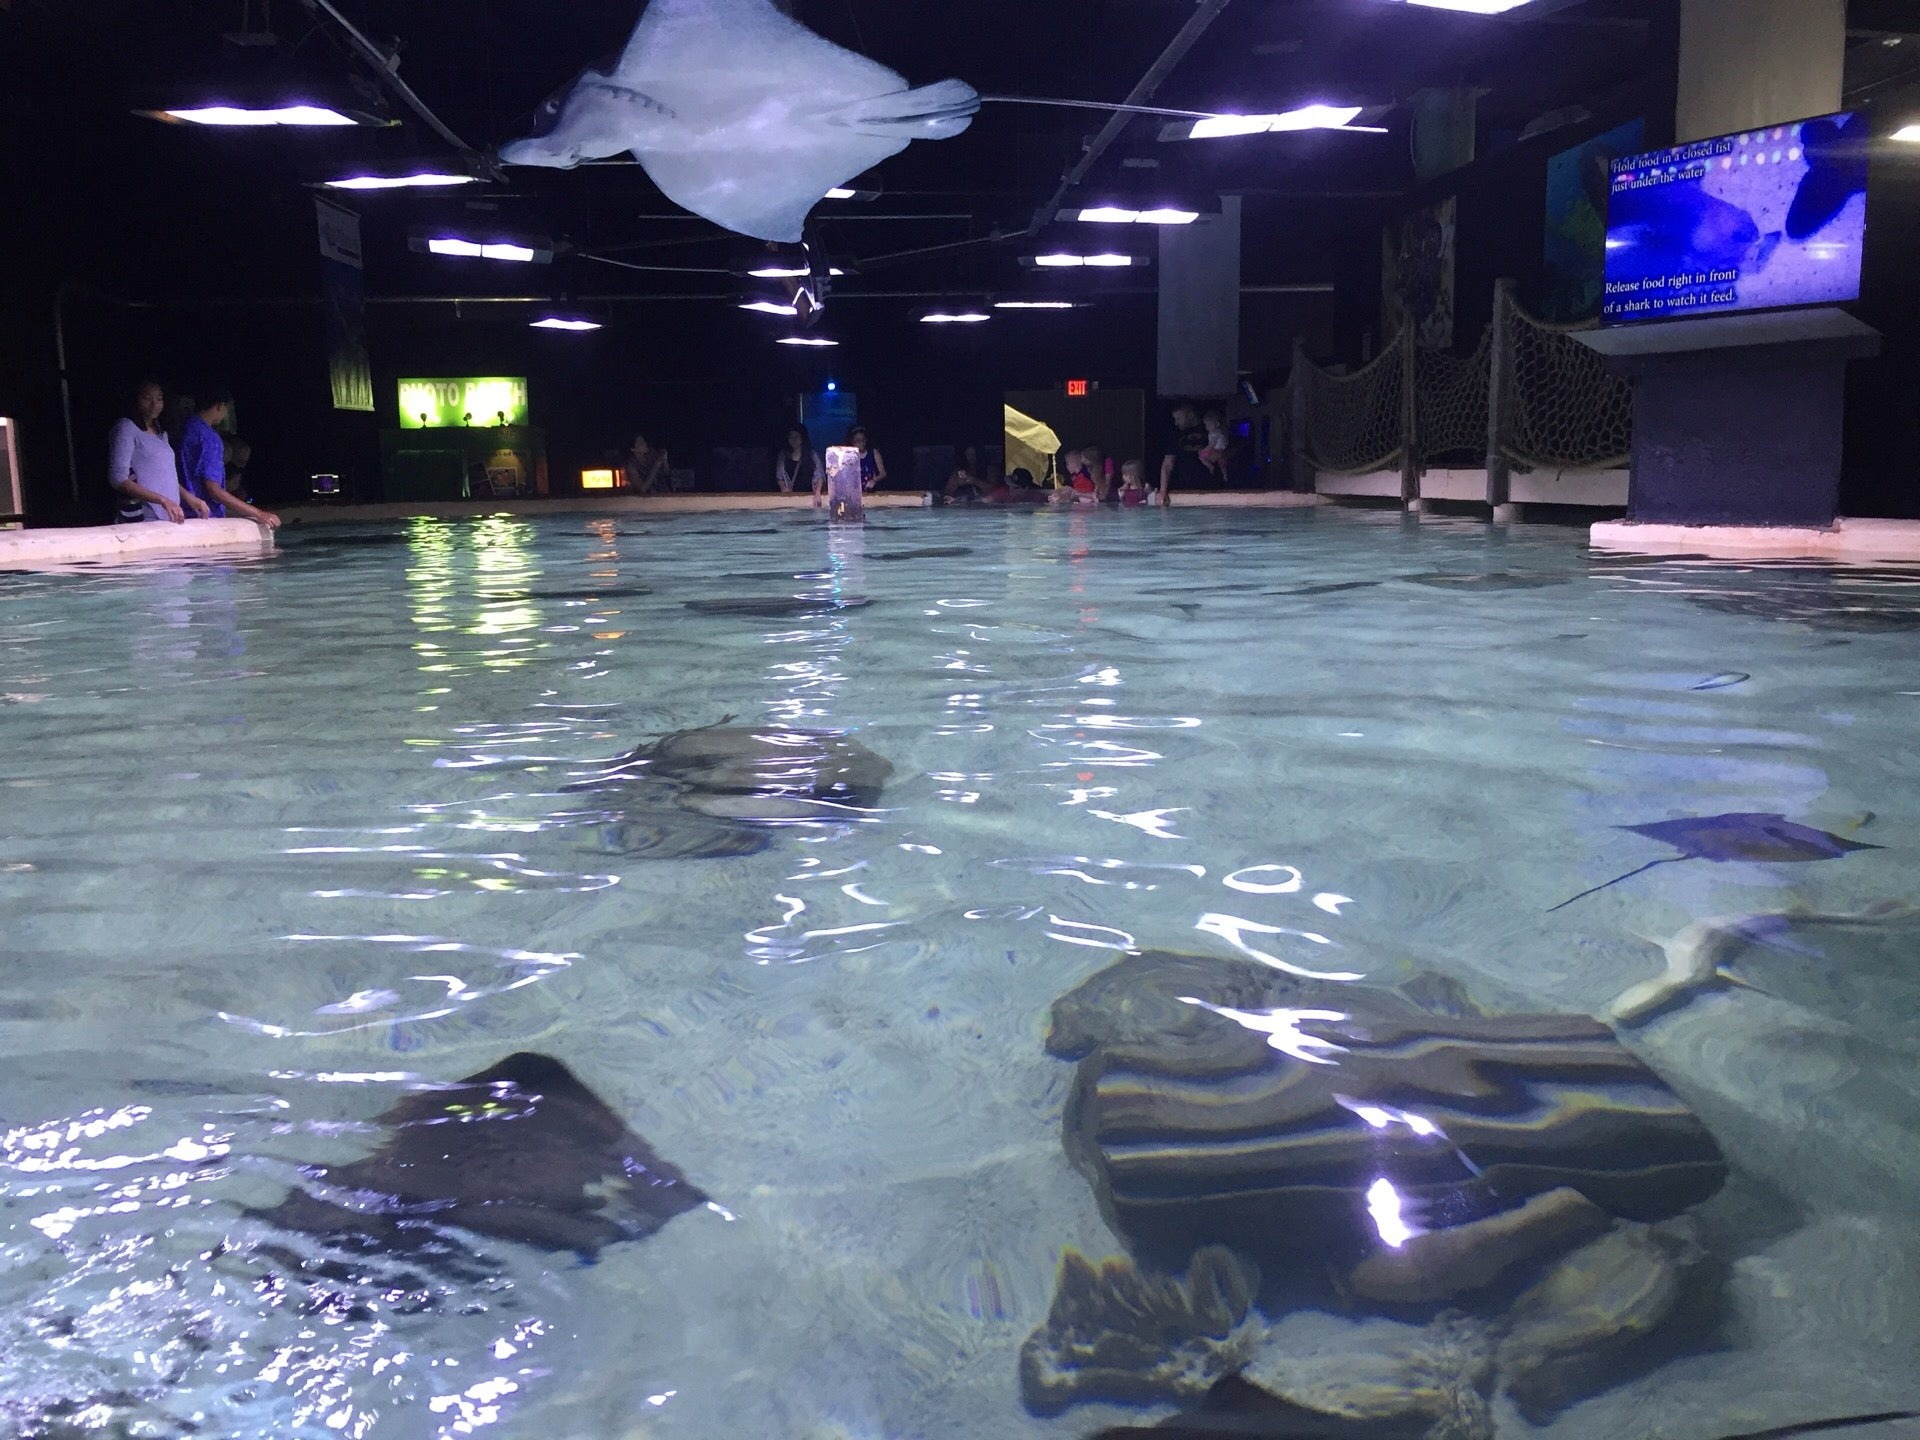 San Antonio Aquarium